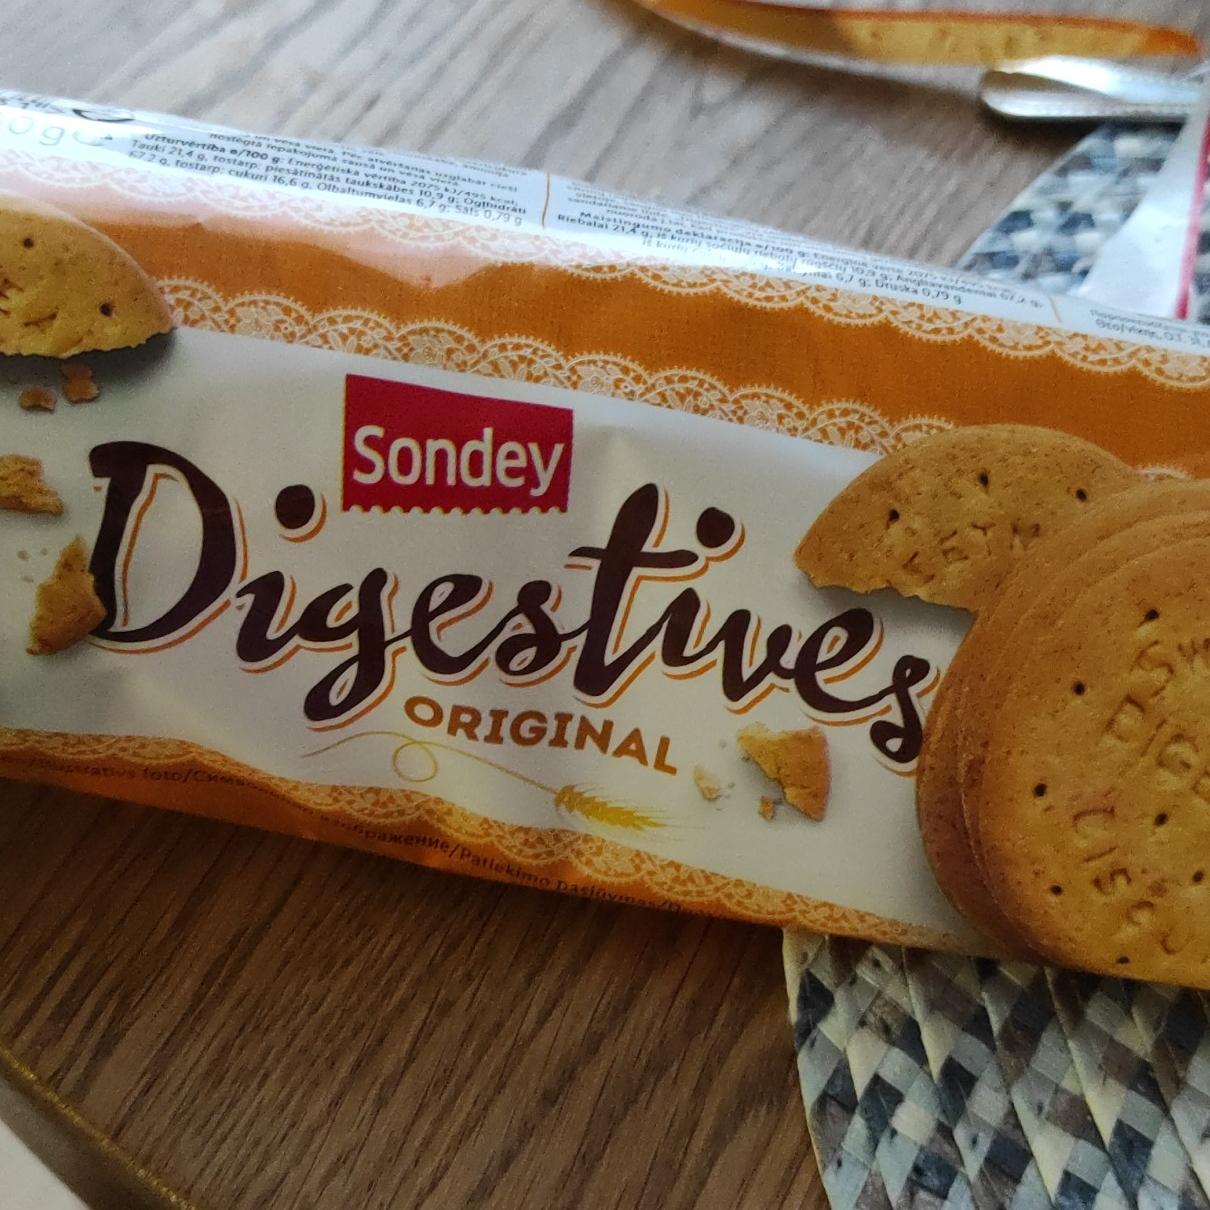 Фото - Печенье digestives oridinal Sondey